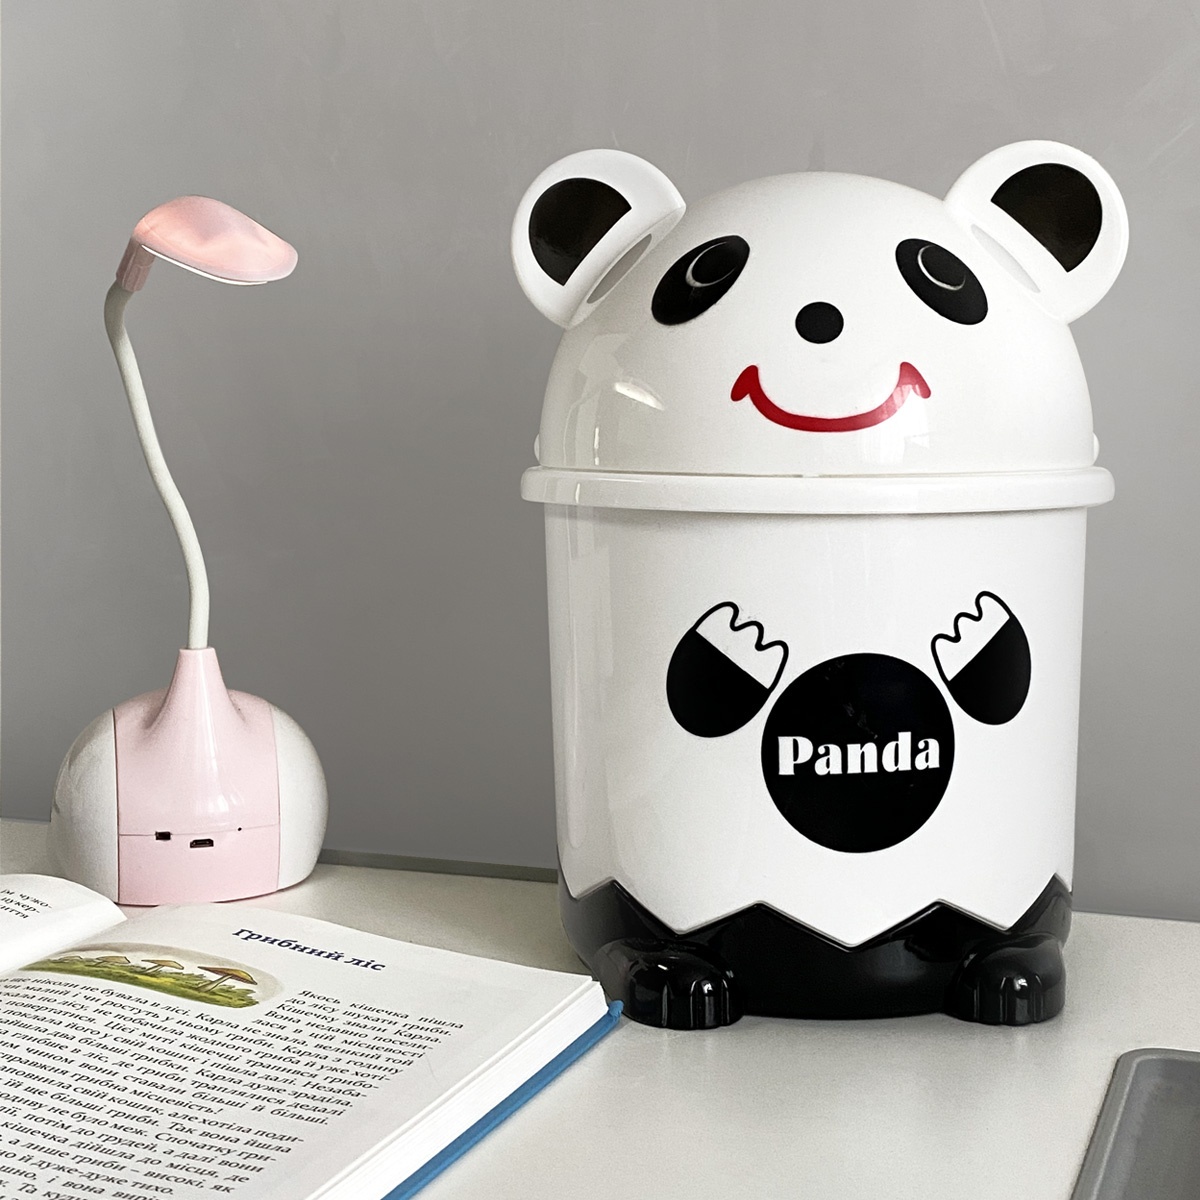 Відро для сміття на 3.2л кругле MVM Panda з кришкою 270x185x185мм пластикове з малюнком BIN-07 3,2L WHITE